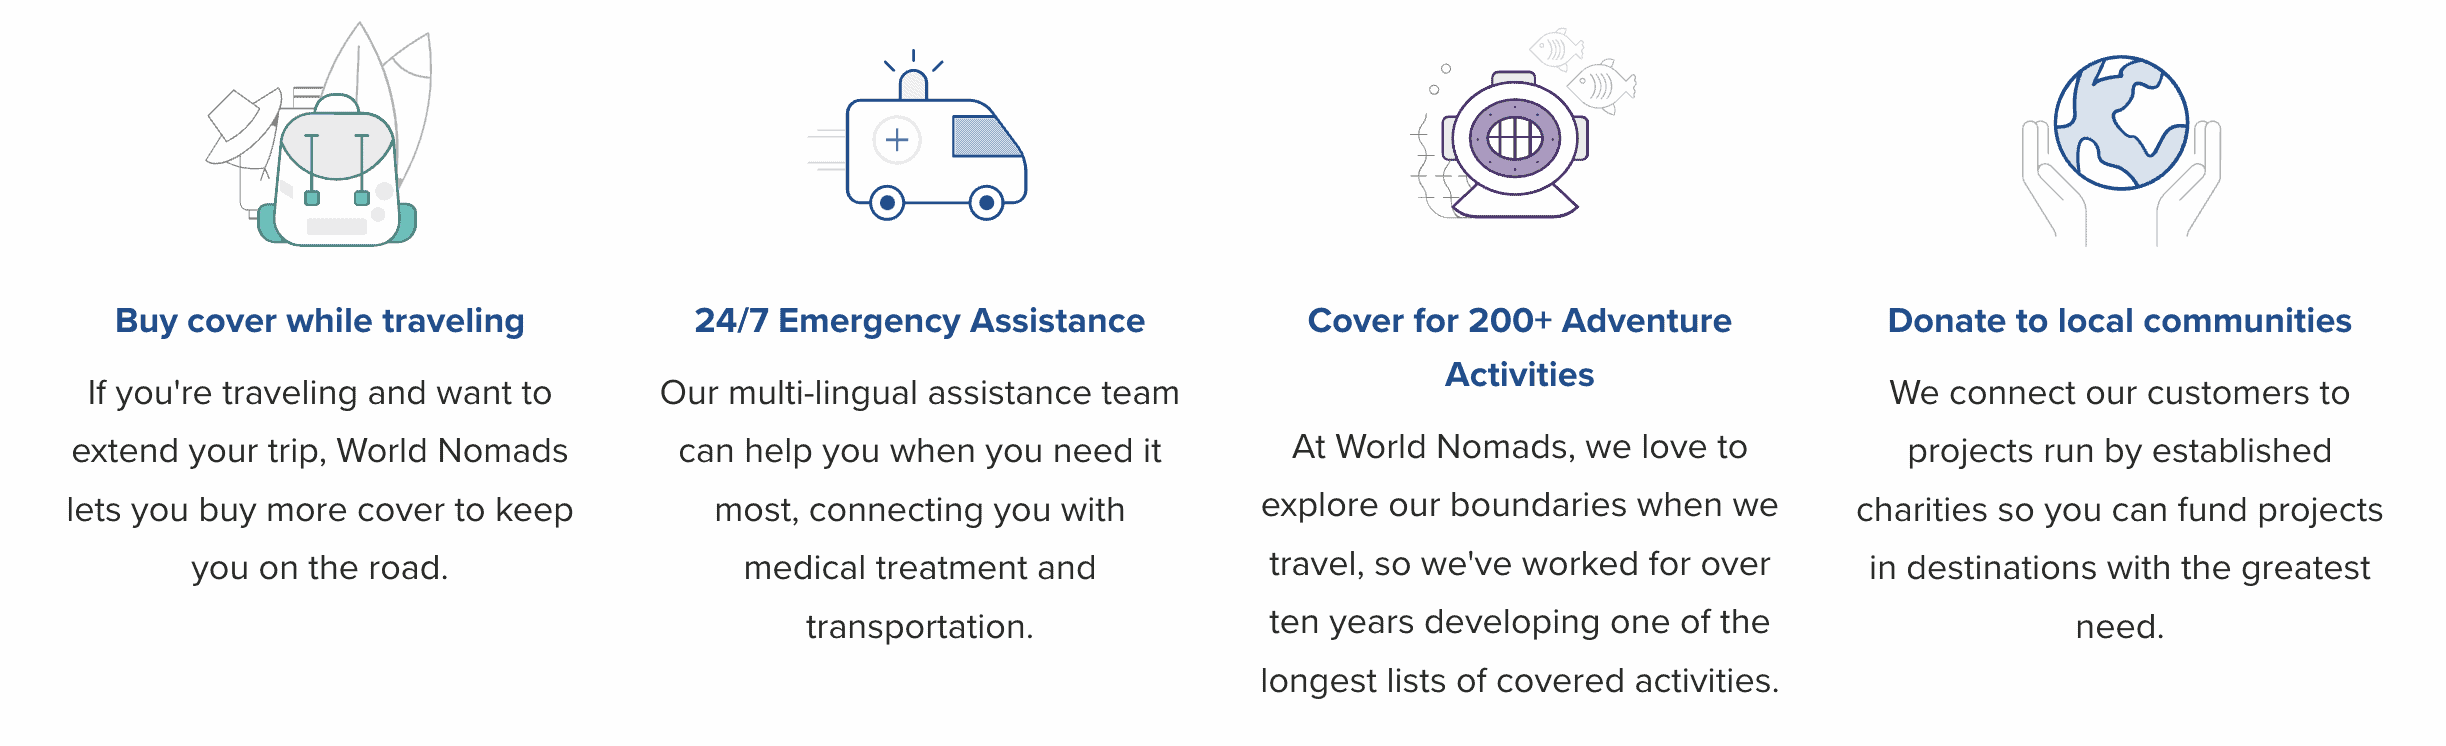 world nomads travel insurance benefits